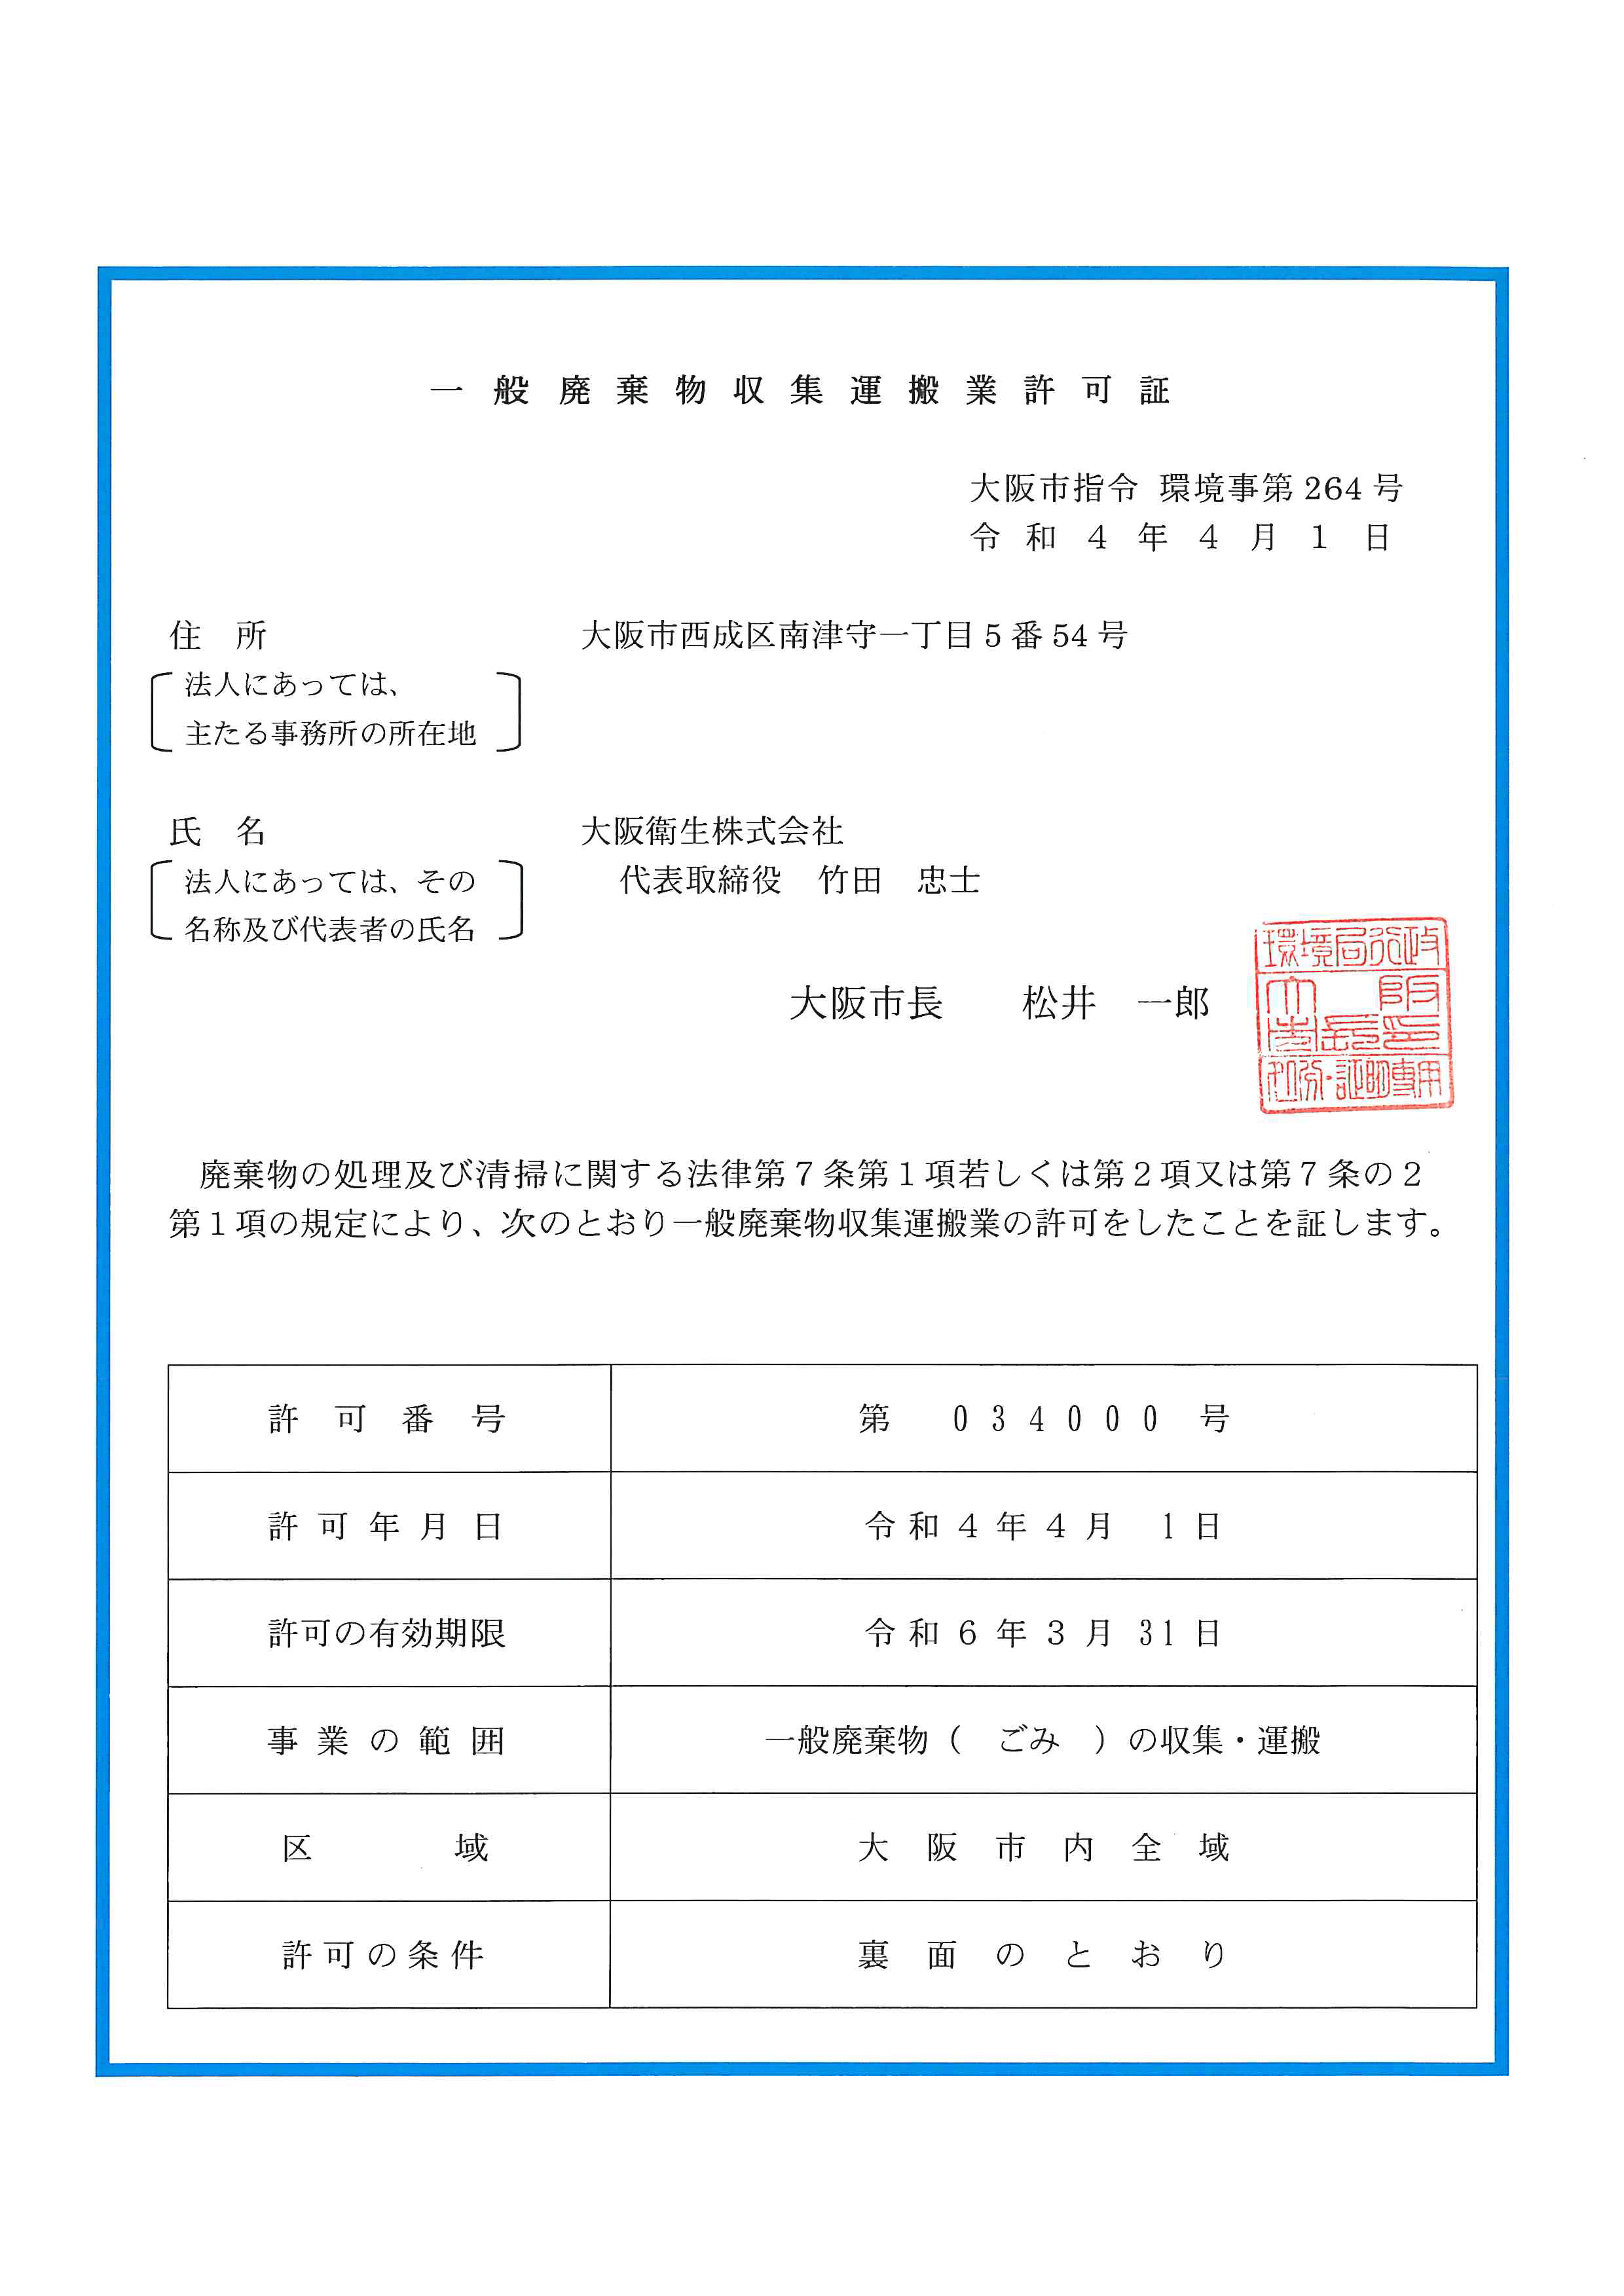 大阪市一般廃棄物収集運搬業許可証（第034-000号）